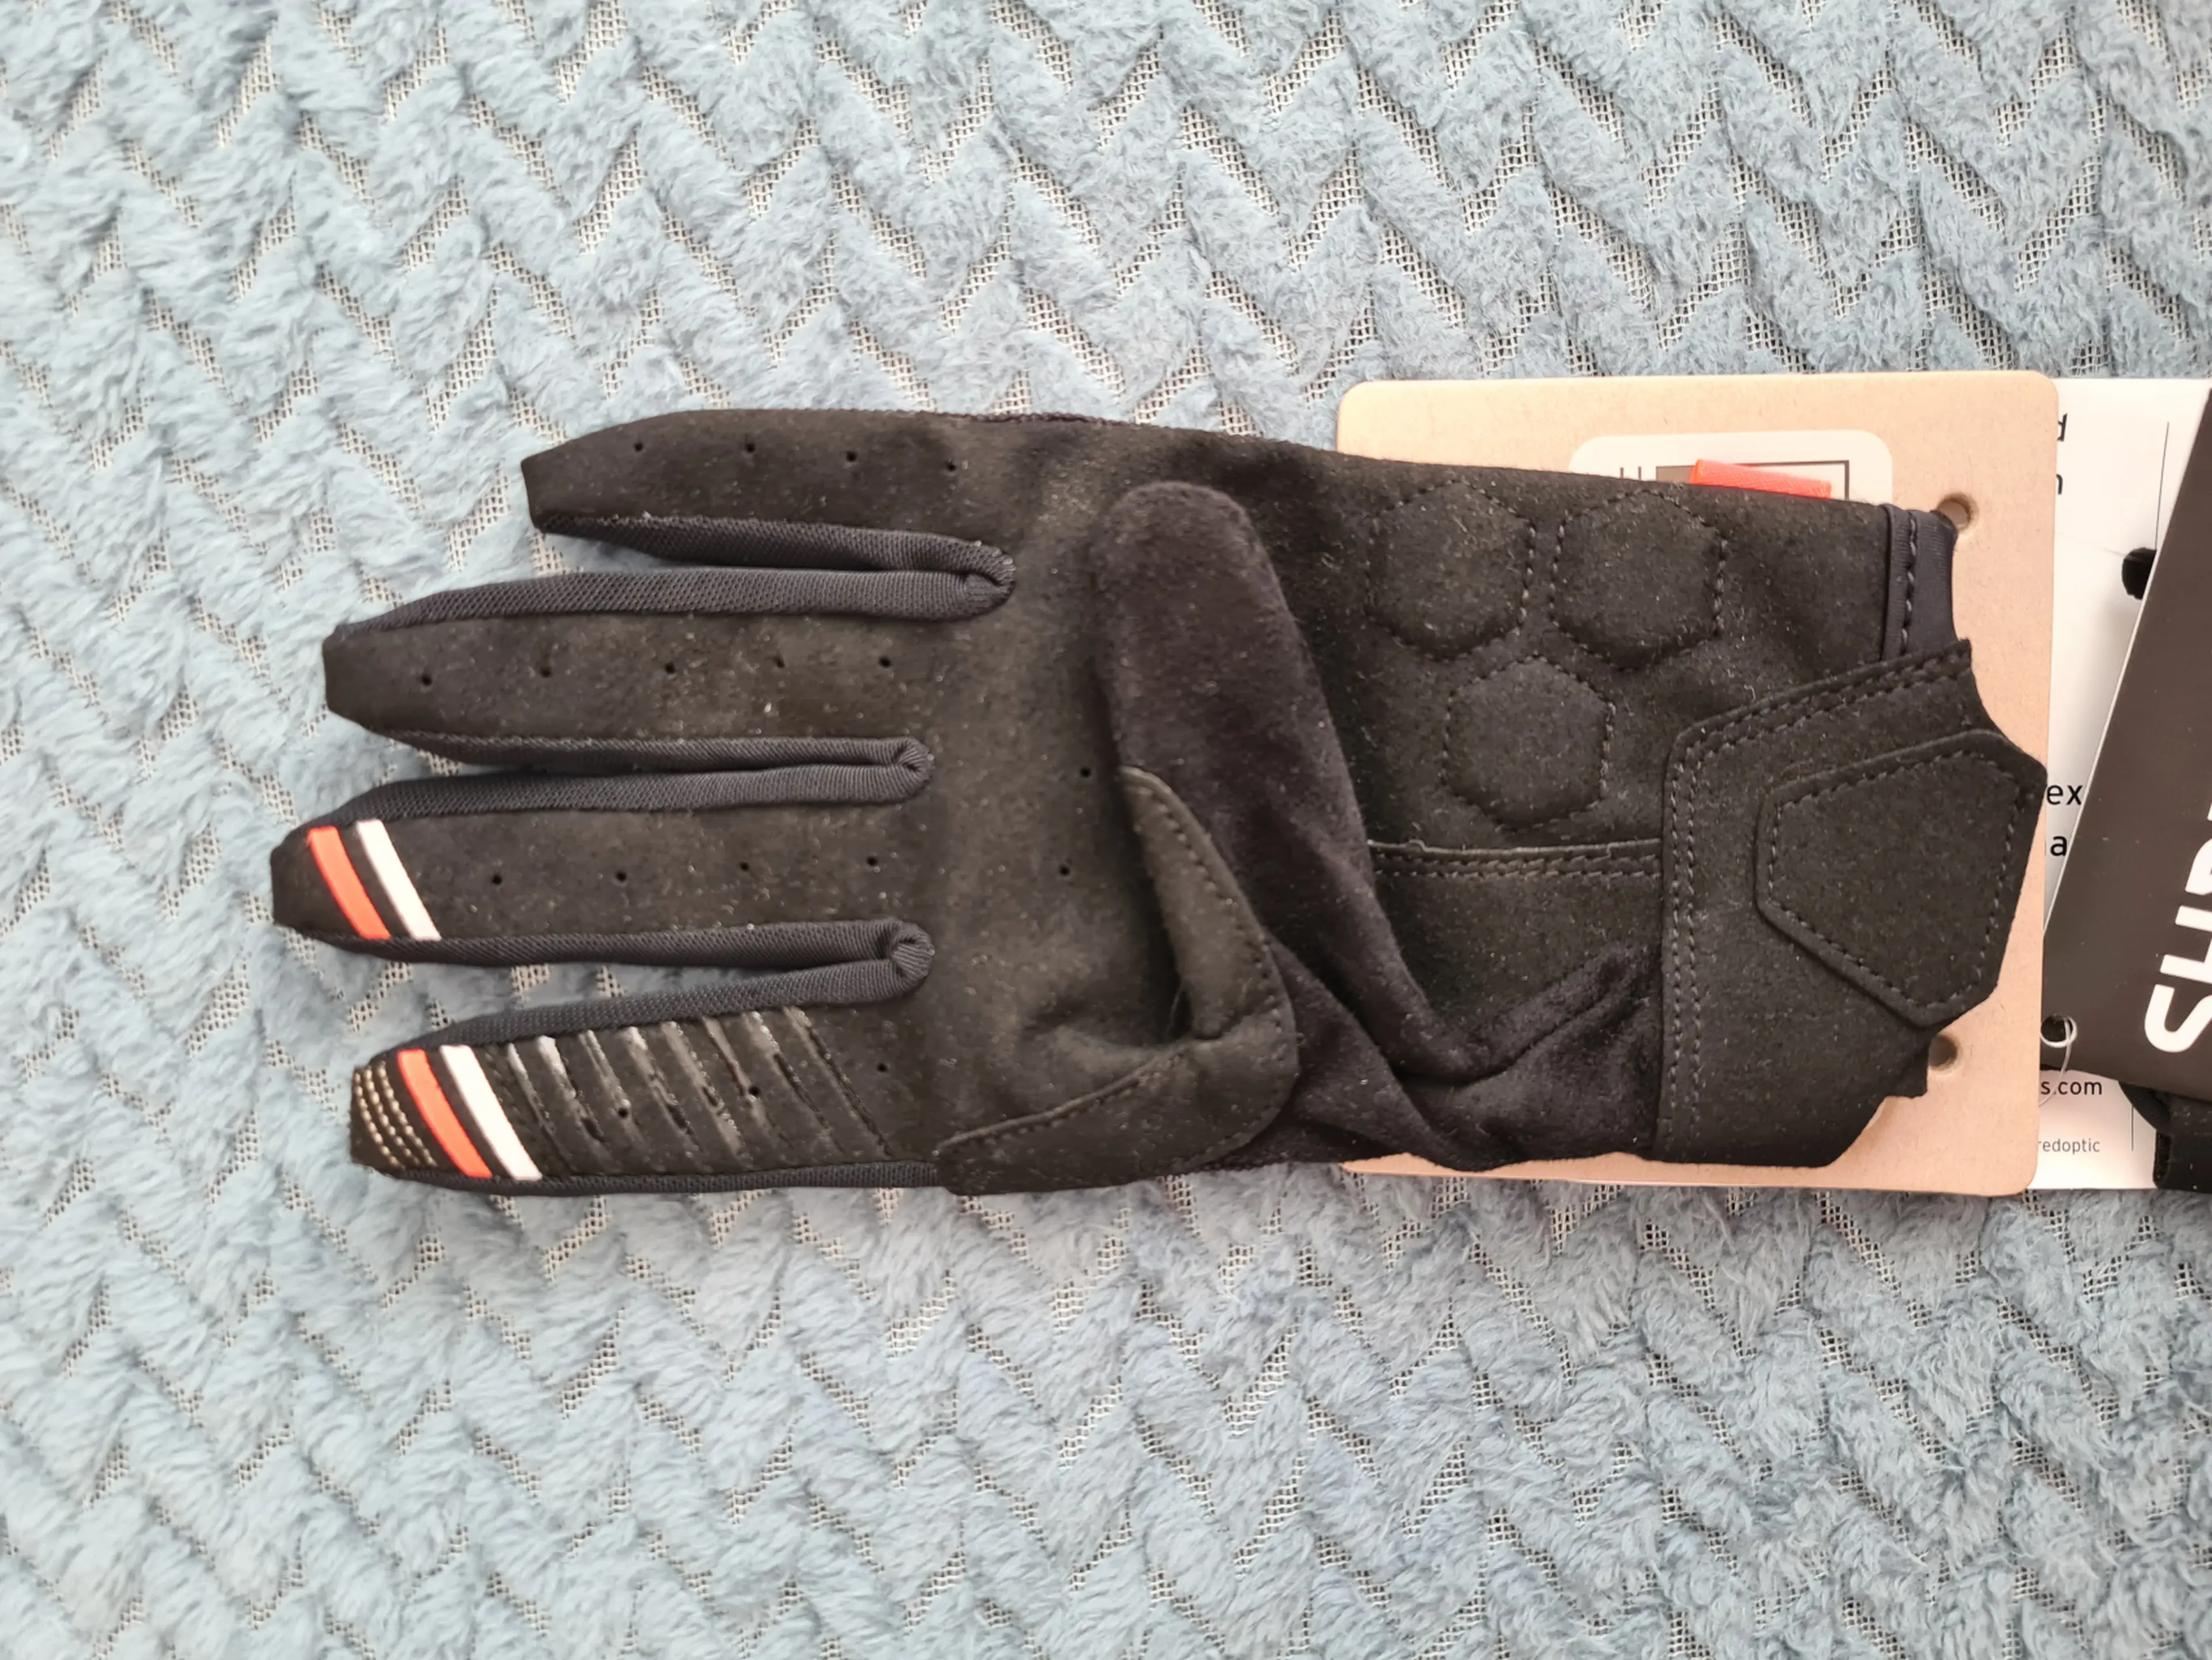 3. Mănuși mtb SHRED Protective Gloves Trail